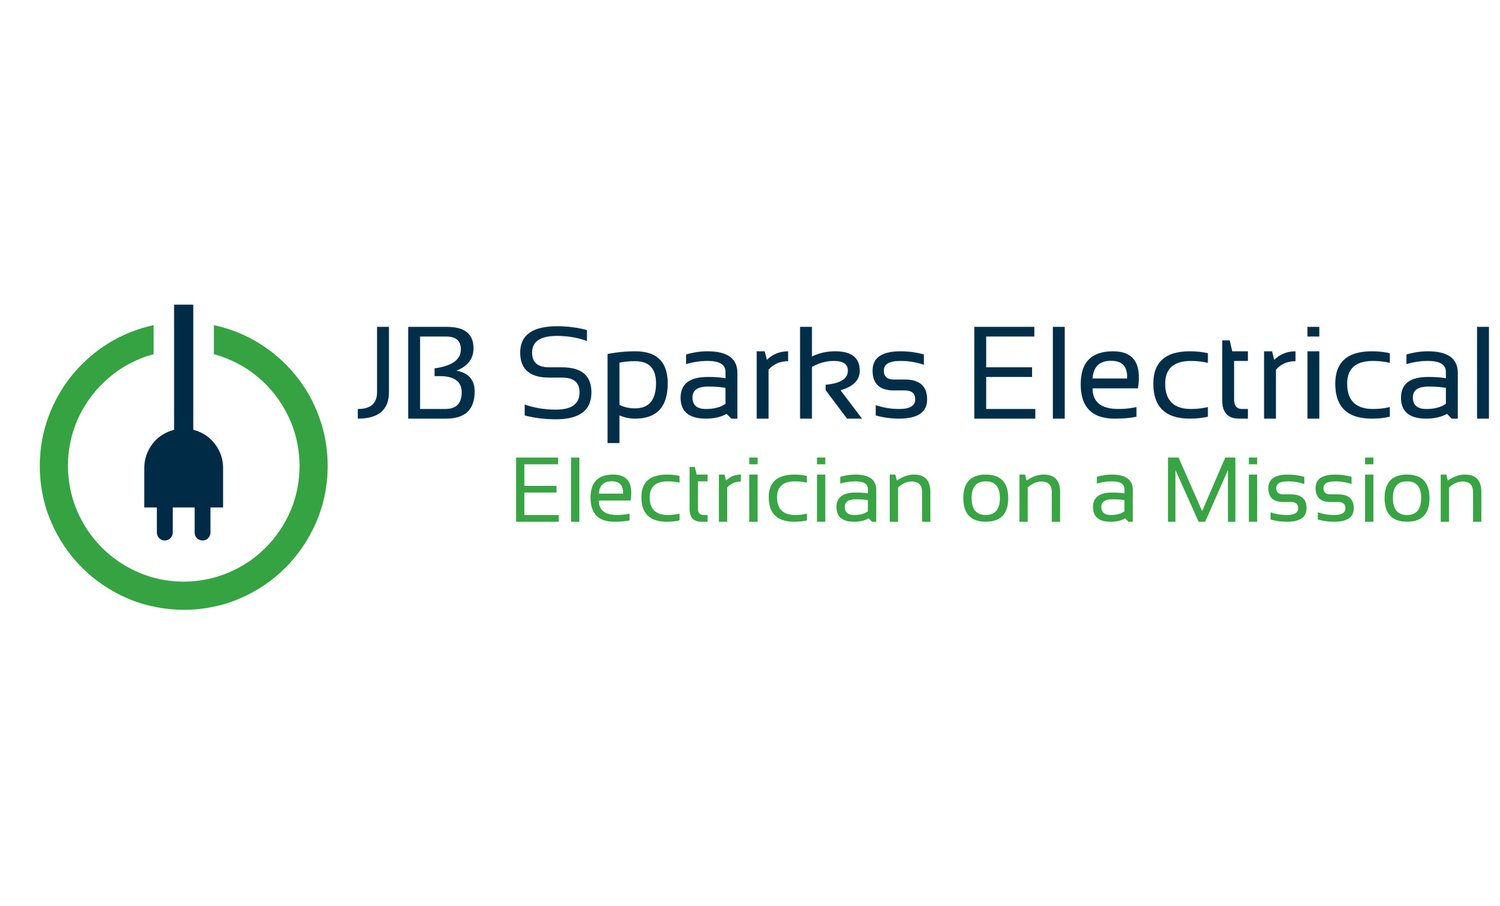 JB Sparks Electrical